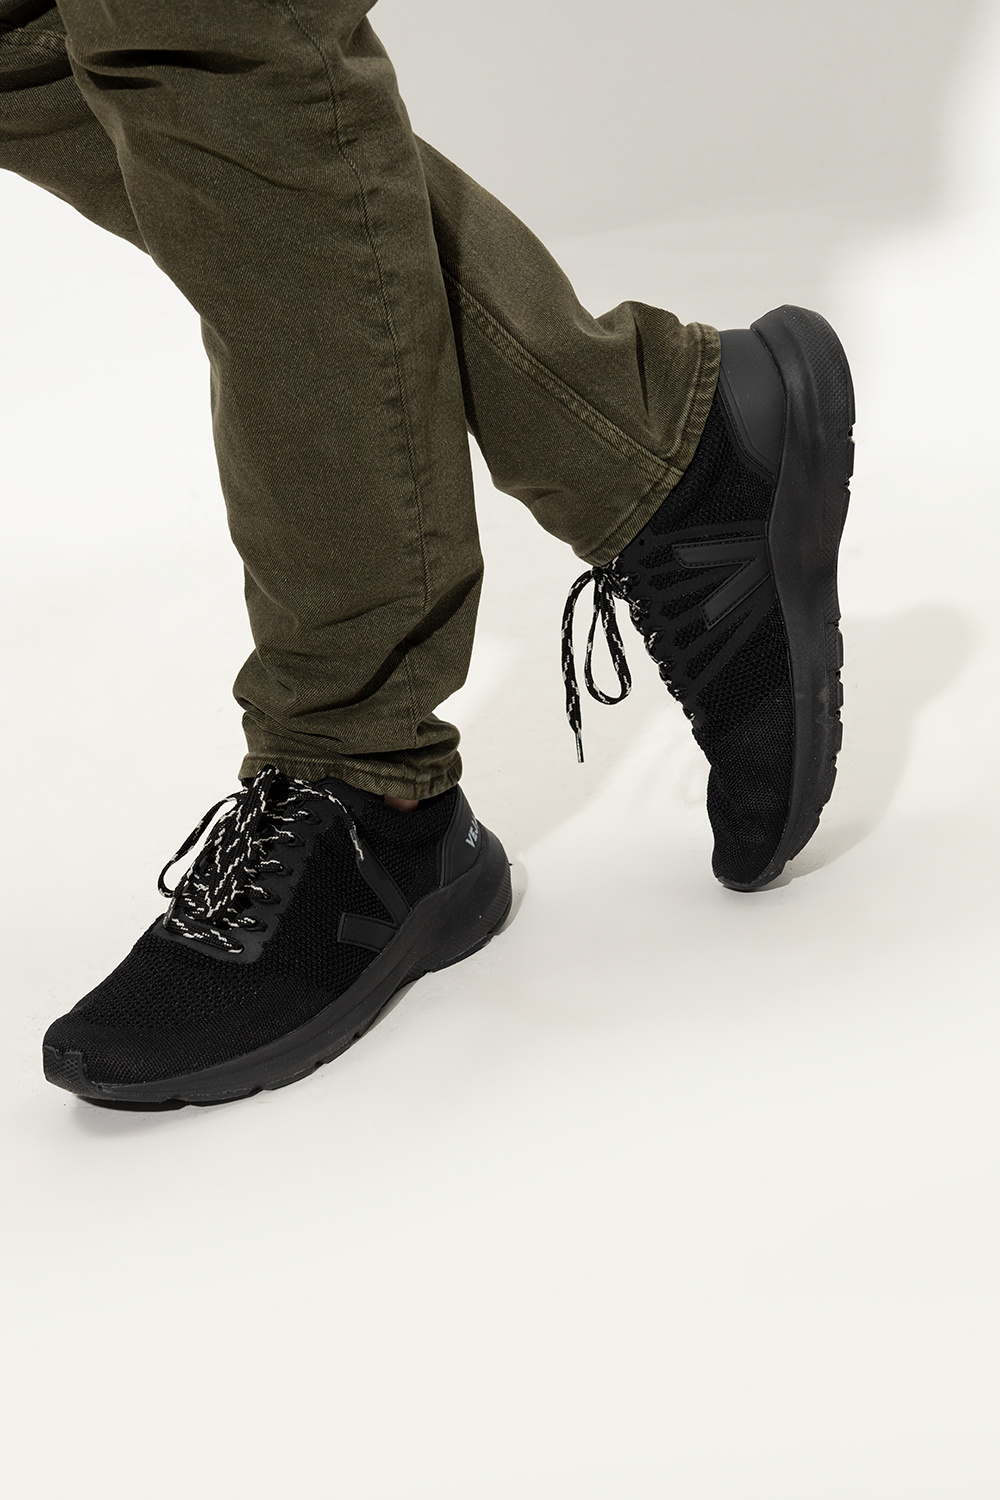 Veja 'Marlin V-Knit' sneakers | Men's Shoes | Vitkac